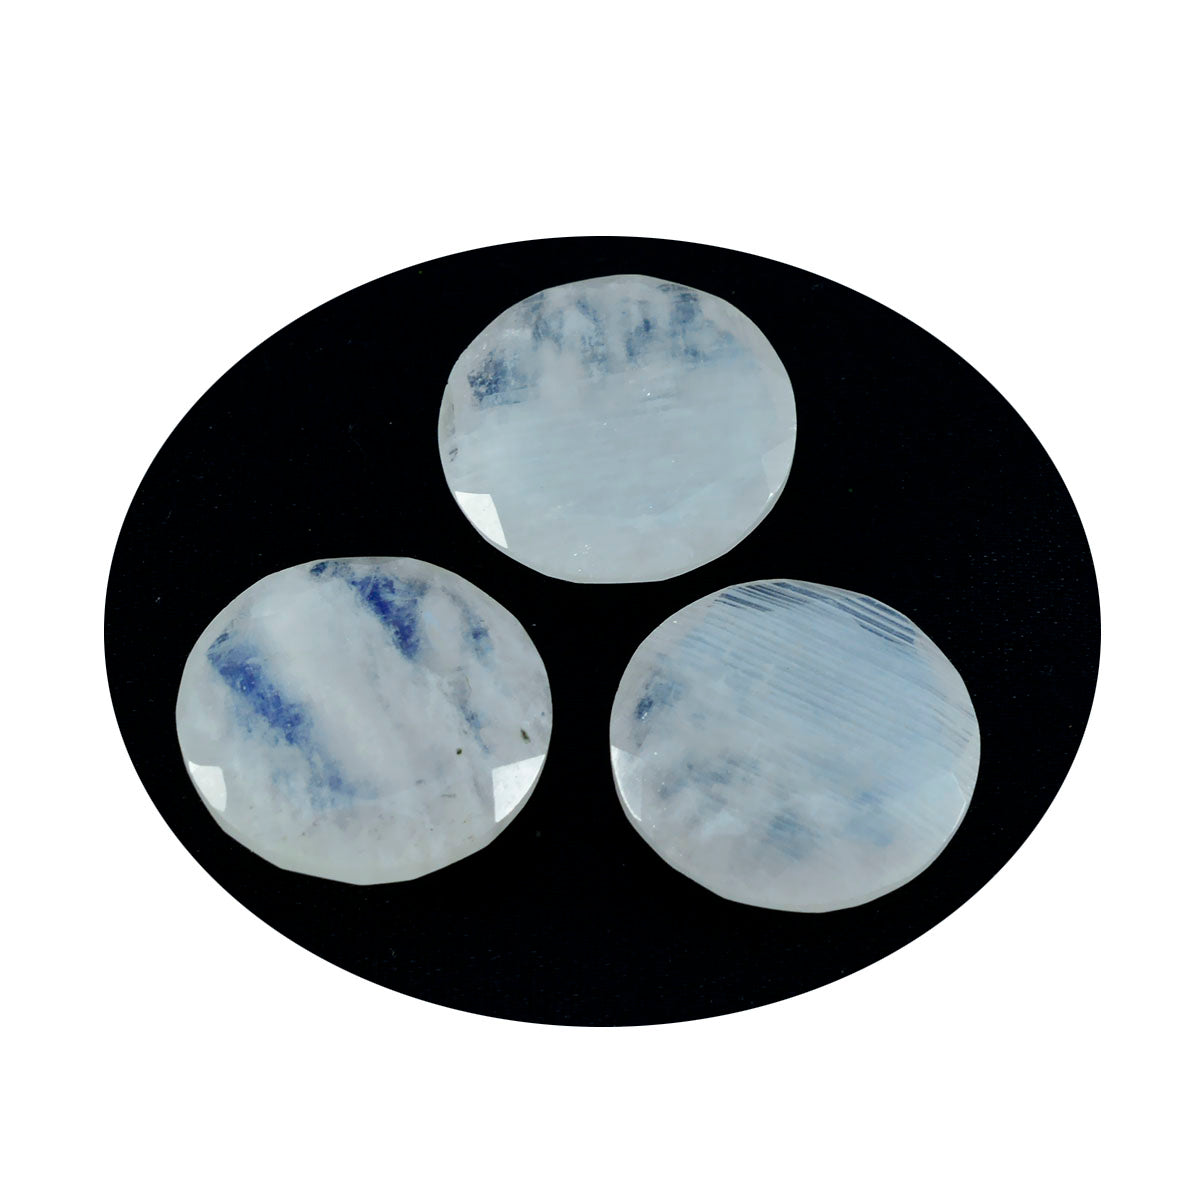 Riyogems 1 Stück weißer Regenbogen-Mondstein, facettiert, 15 x 15 mm, runde Form, lose Edelsteine in AAA-Qualität